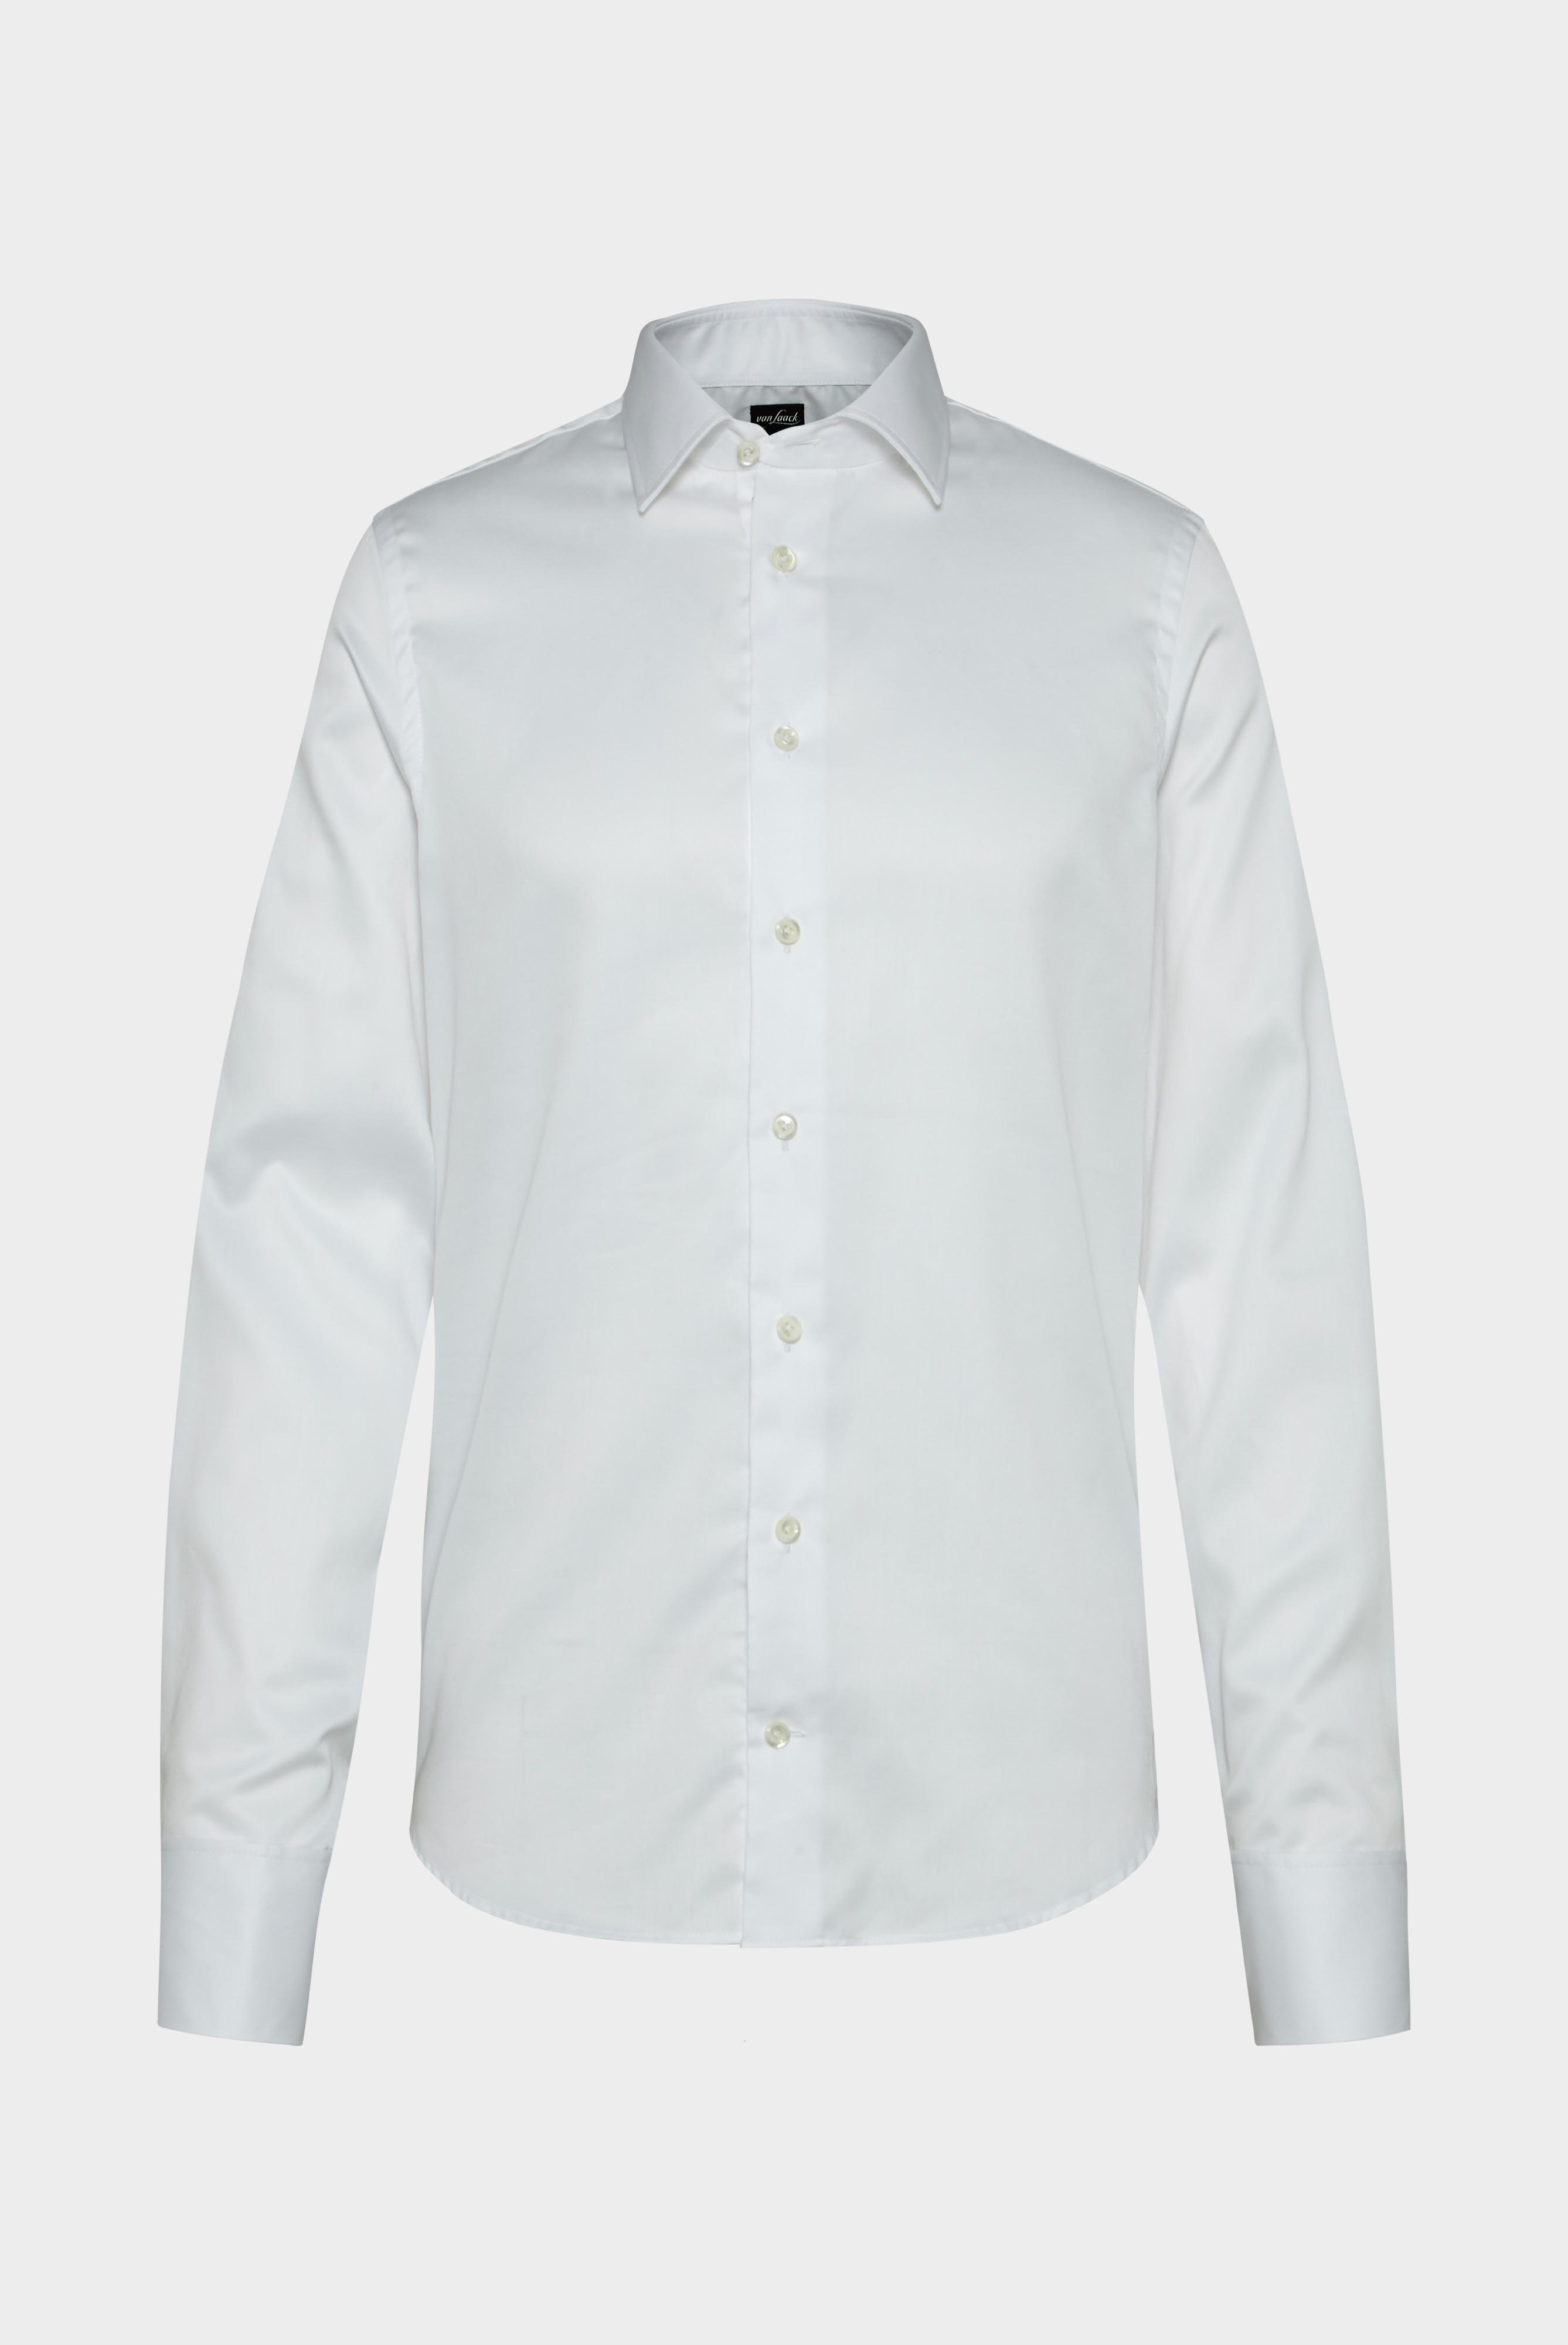 Bügelleichte Hemden+Bügelfreies Twill Hemd Slim Fit+20.2047.BQ.132241.000.37